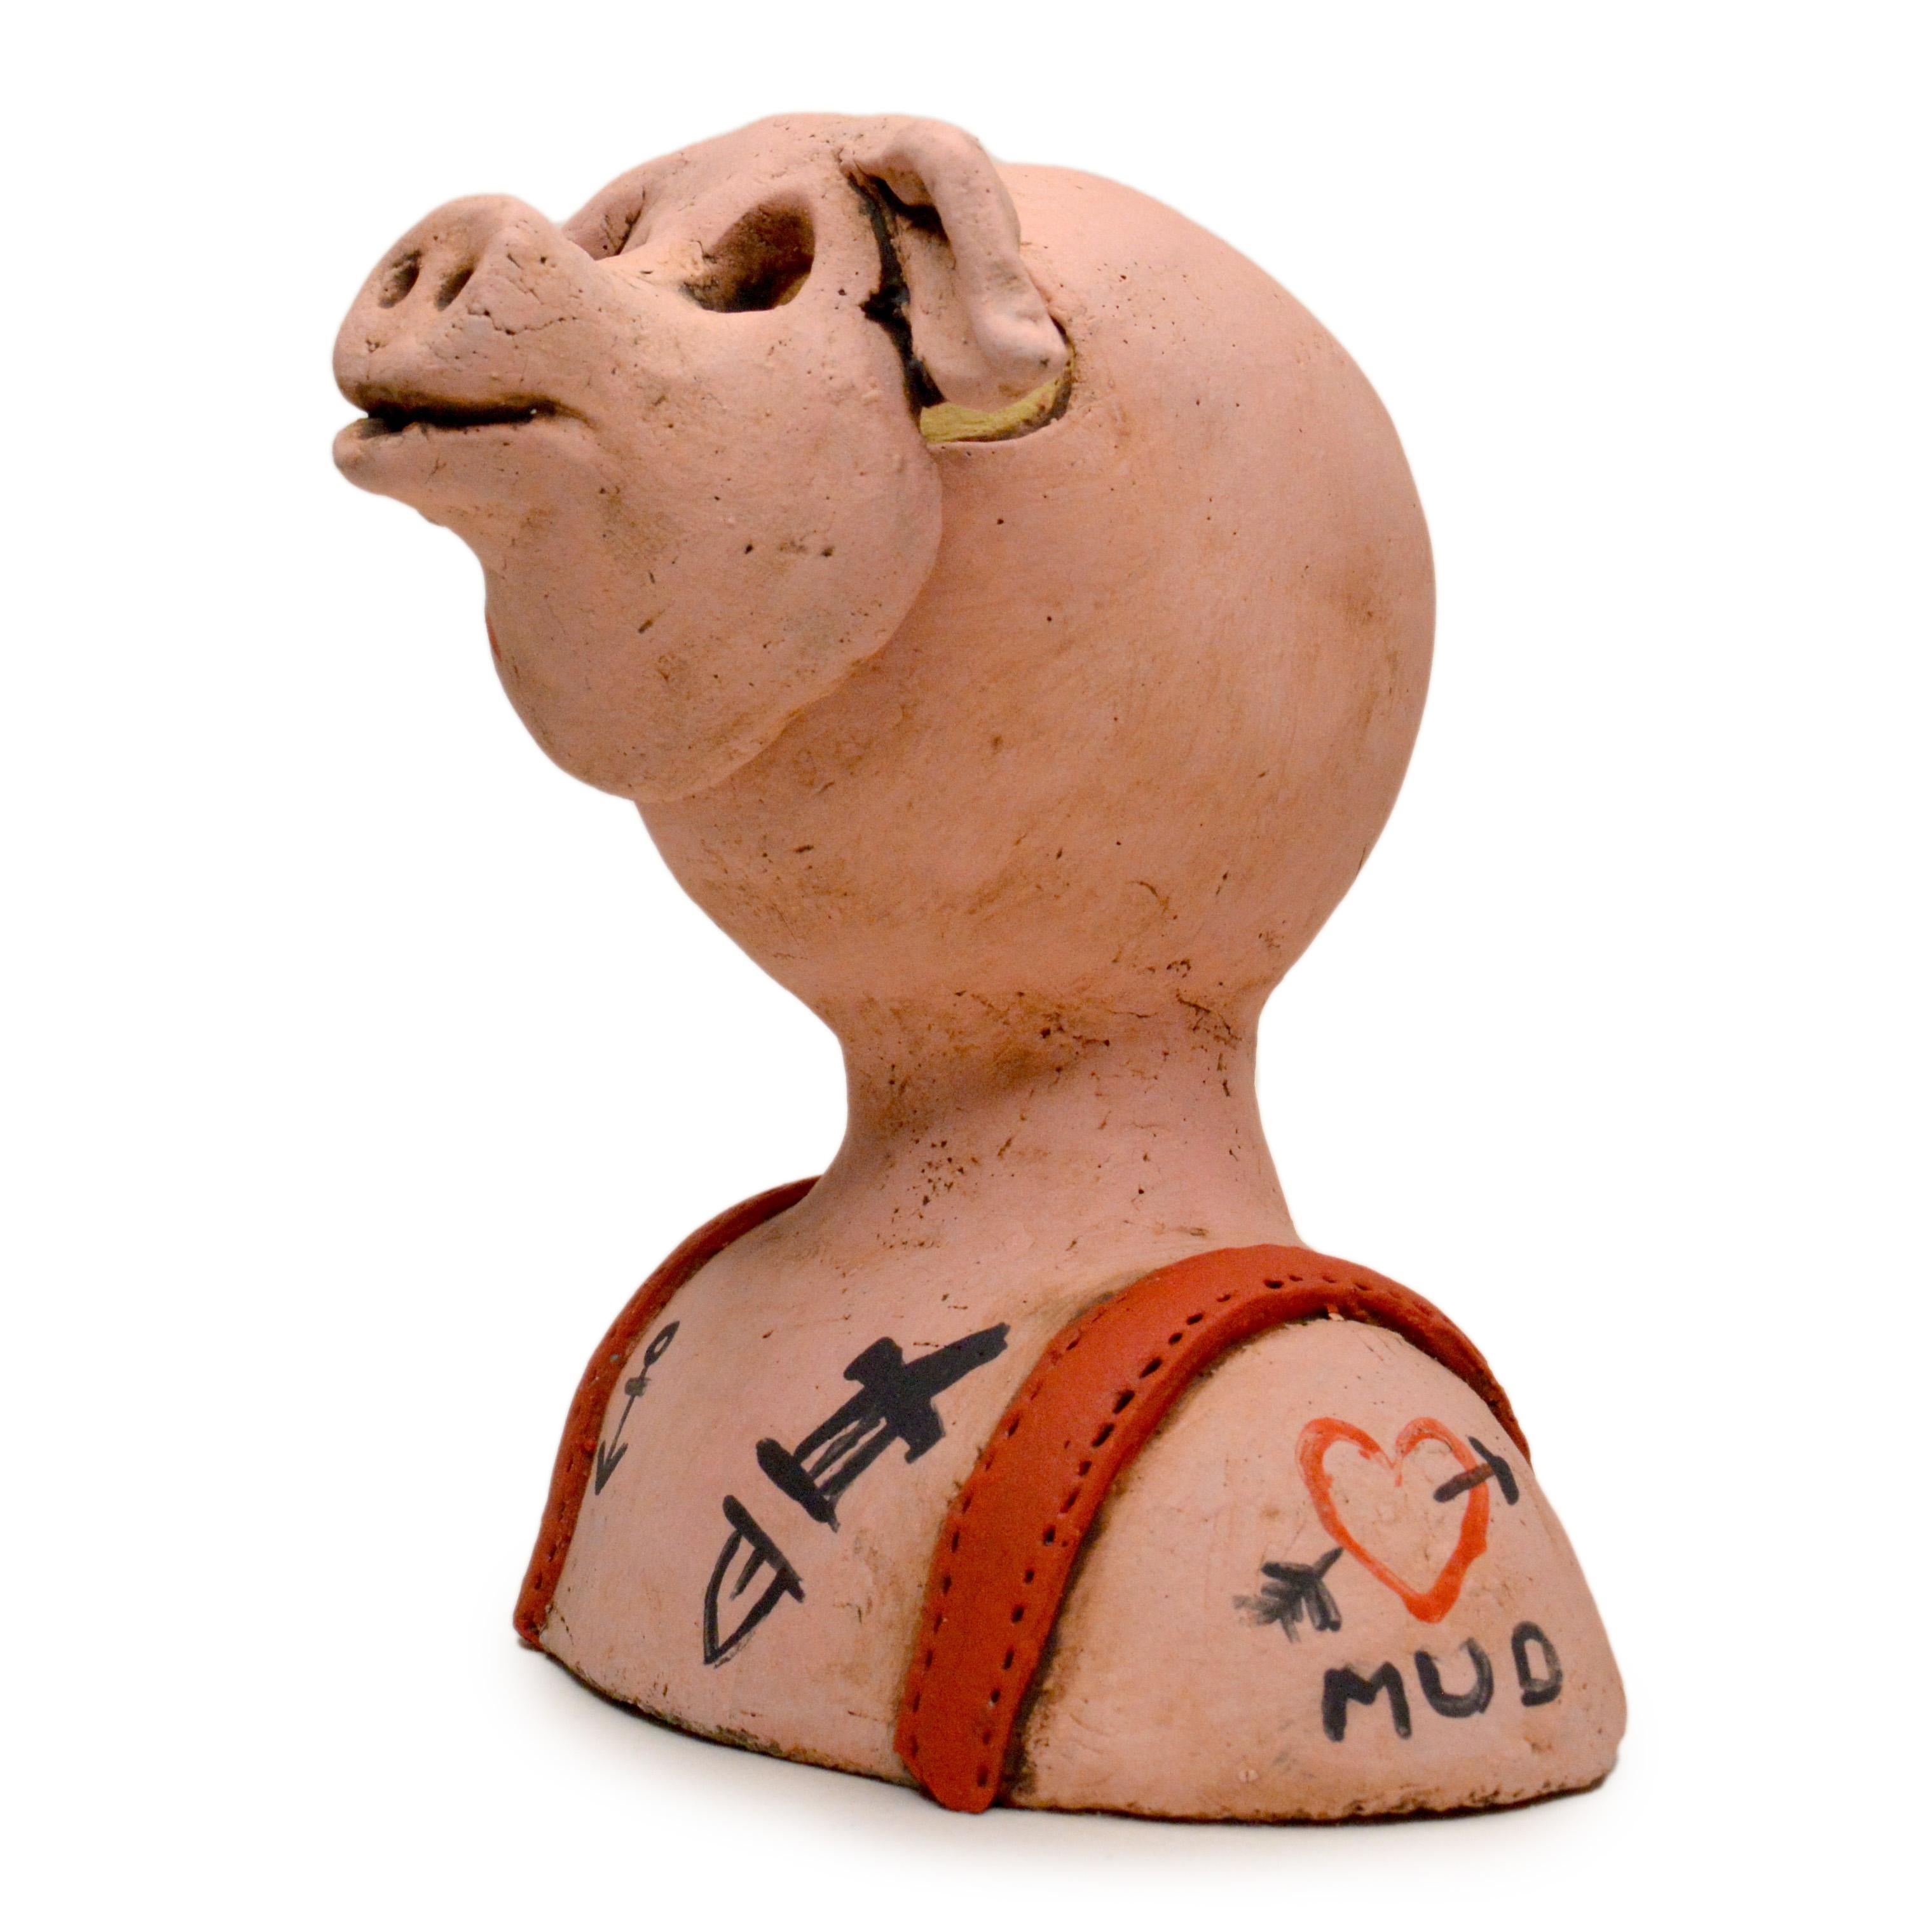 Renate Frotscher Figurative Sculpture - Pin·e·co 021 Original Ceramic Sculpture disguised as tattooed pig